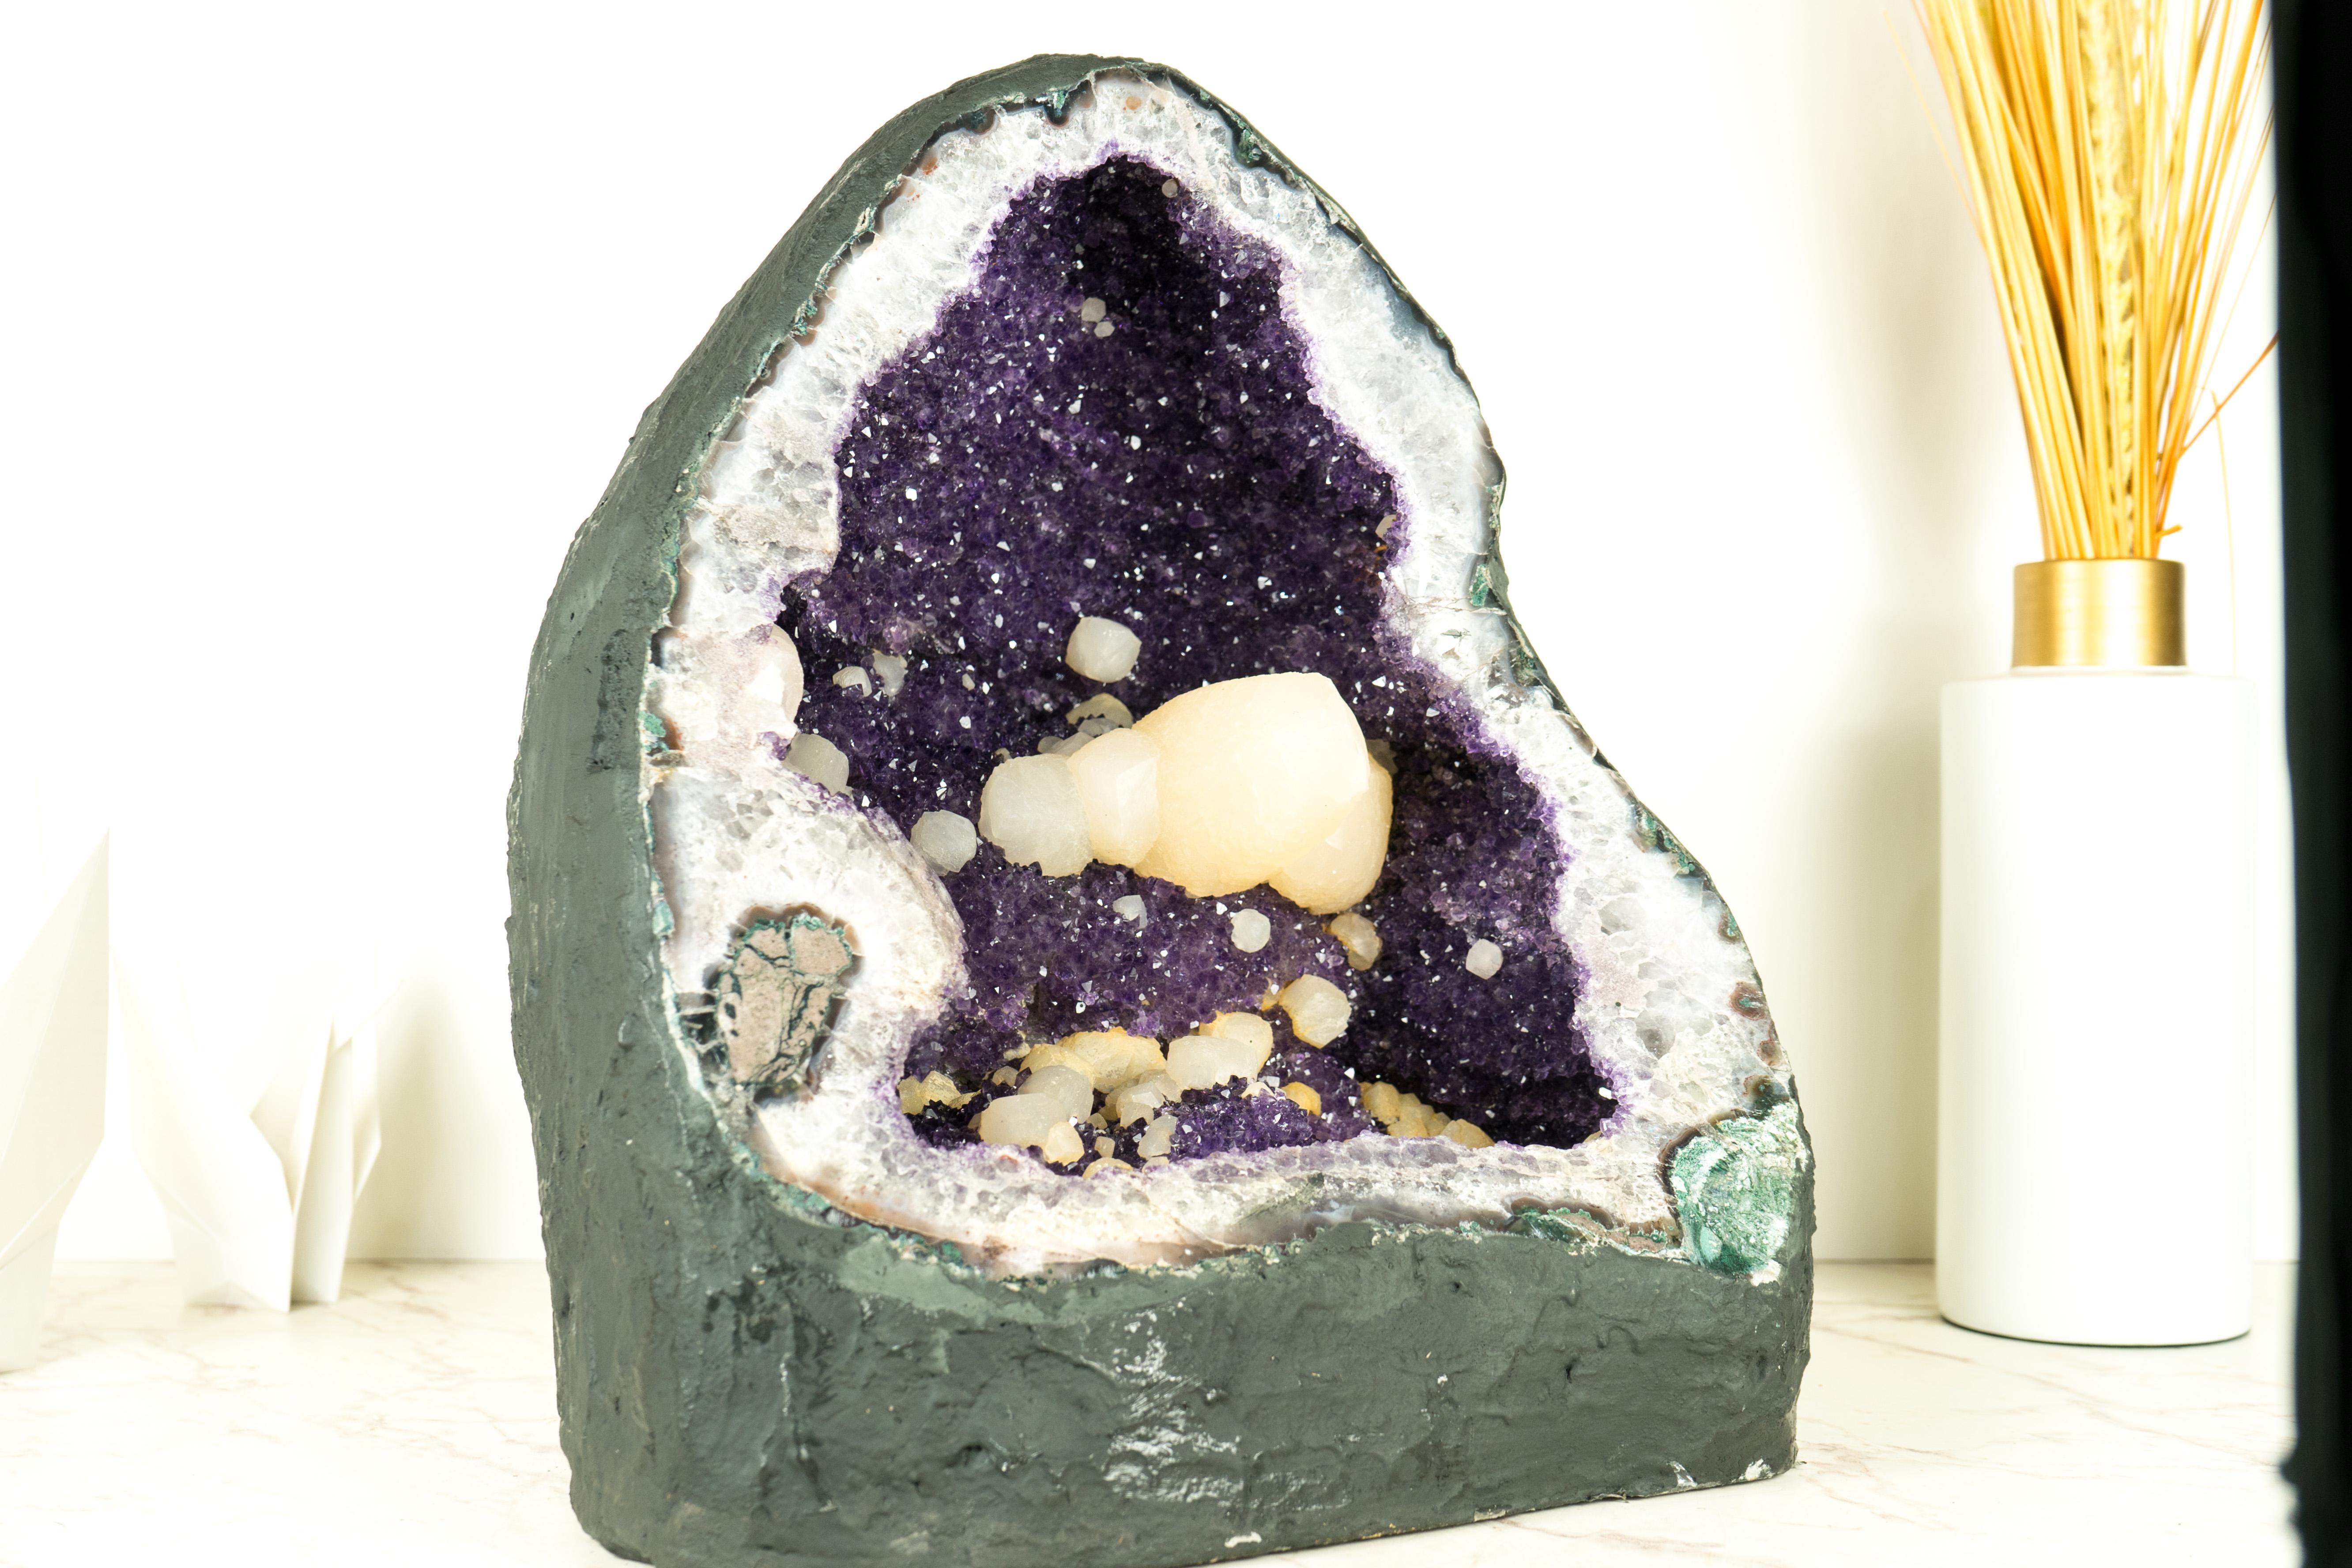 Eine uruguayische Amethyst-Geode Meisterwerk: Eine selten gesehene Fusion von perfektem Calcit mit funkelndem lila Amethyst-Druzy

▫️ Beschreibung

Uruguayische Geoden sind weltweit für ihre außergewöhnliche Schönheit bekannt und zählen zu den